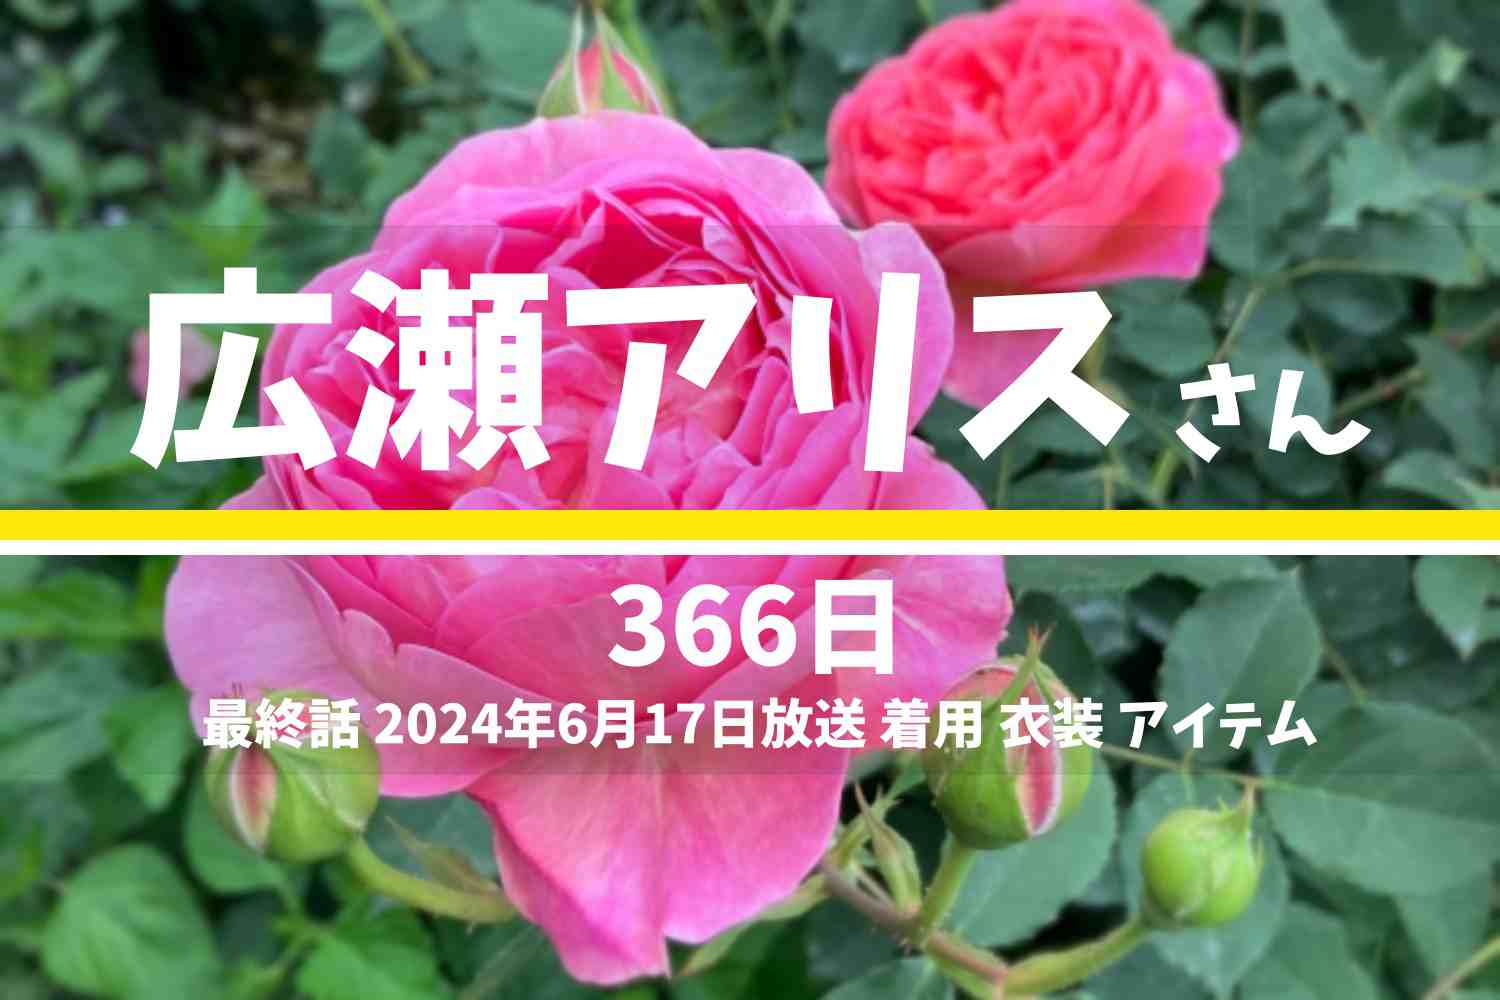 366日 広瀬アリスさん テレビドラマ 衣装 2024年6月17日放送